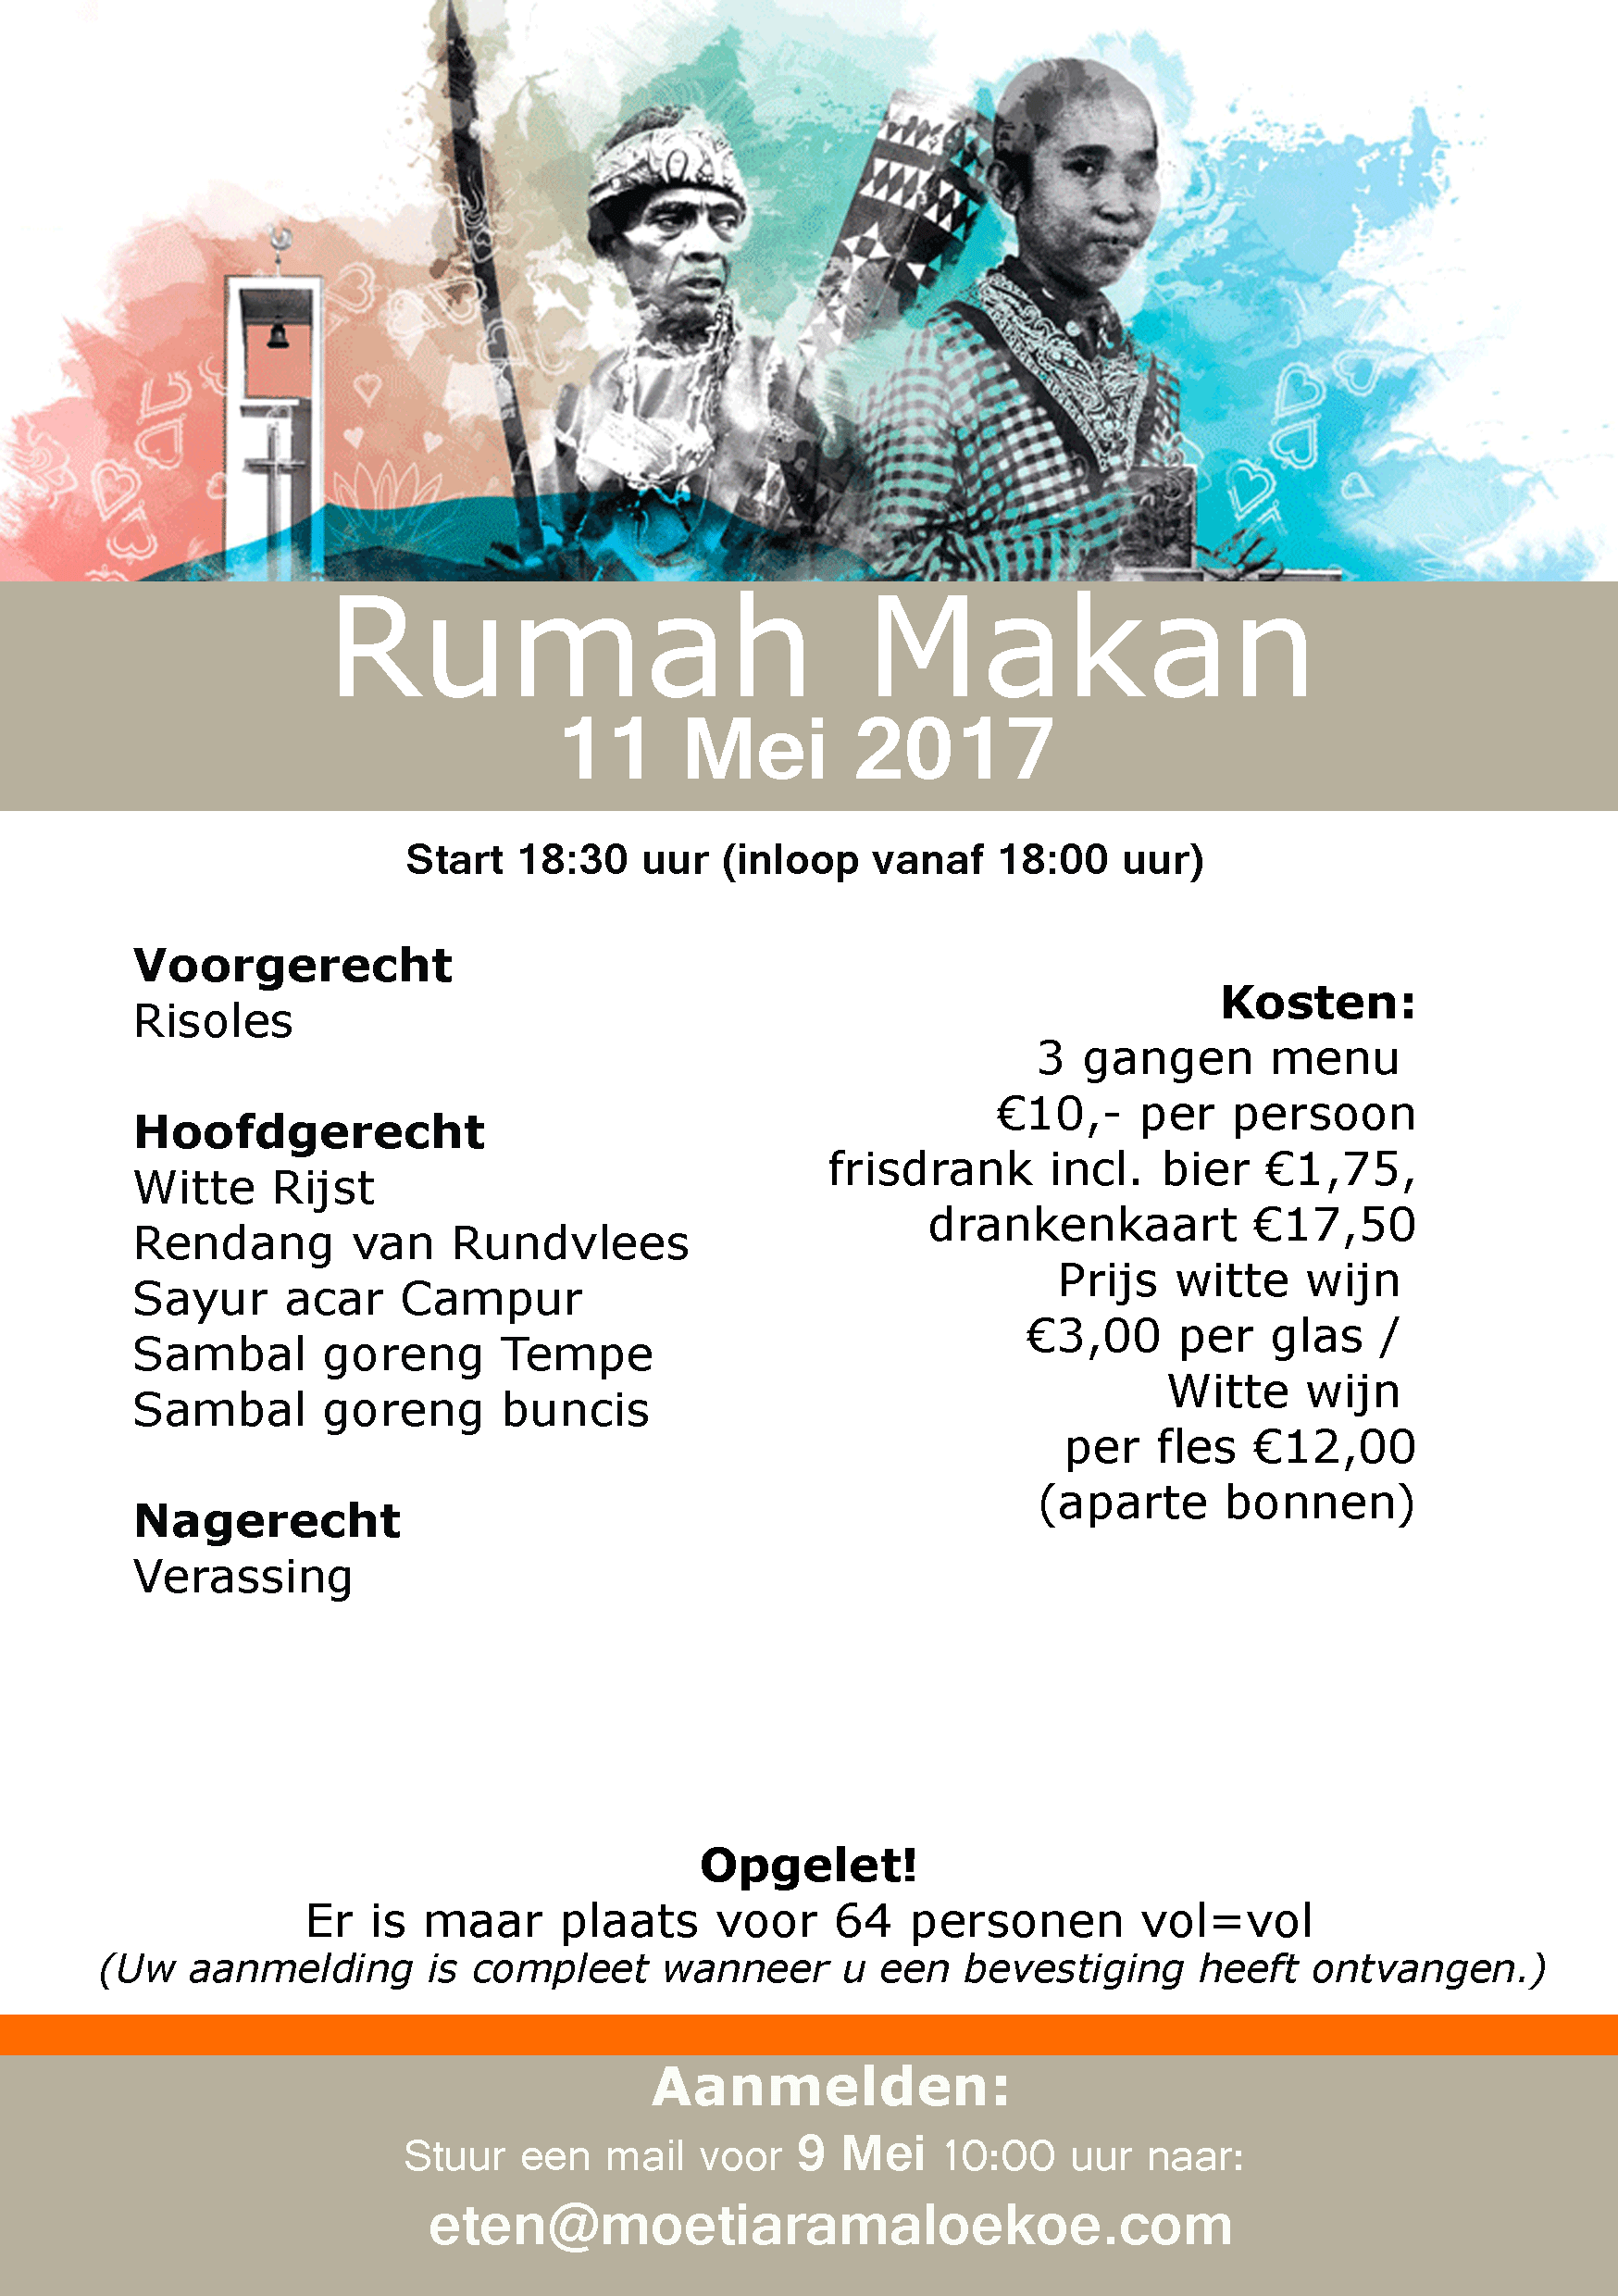 Het Rumah Makan menu van 11 Mei is bekend!